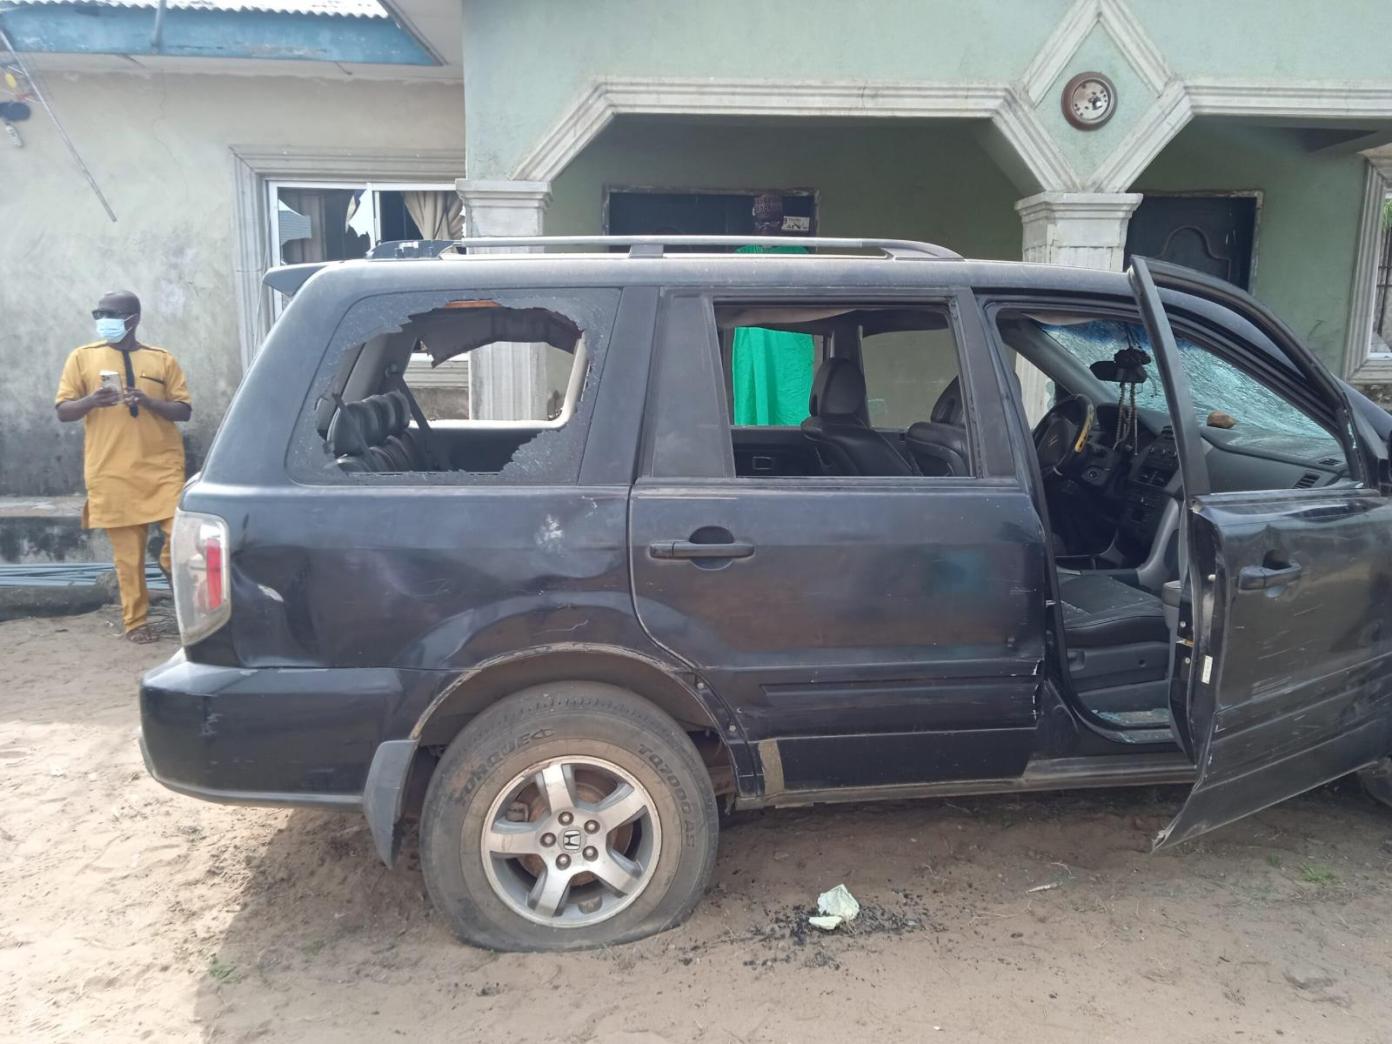 Shock As Eight Children Found Dead In Vehicle In Lagos